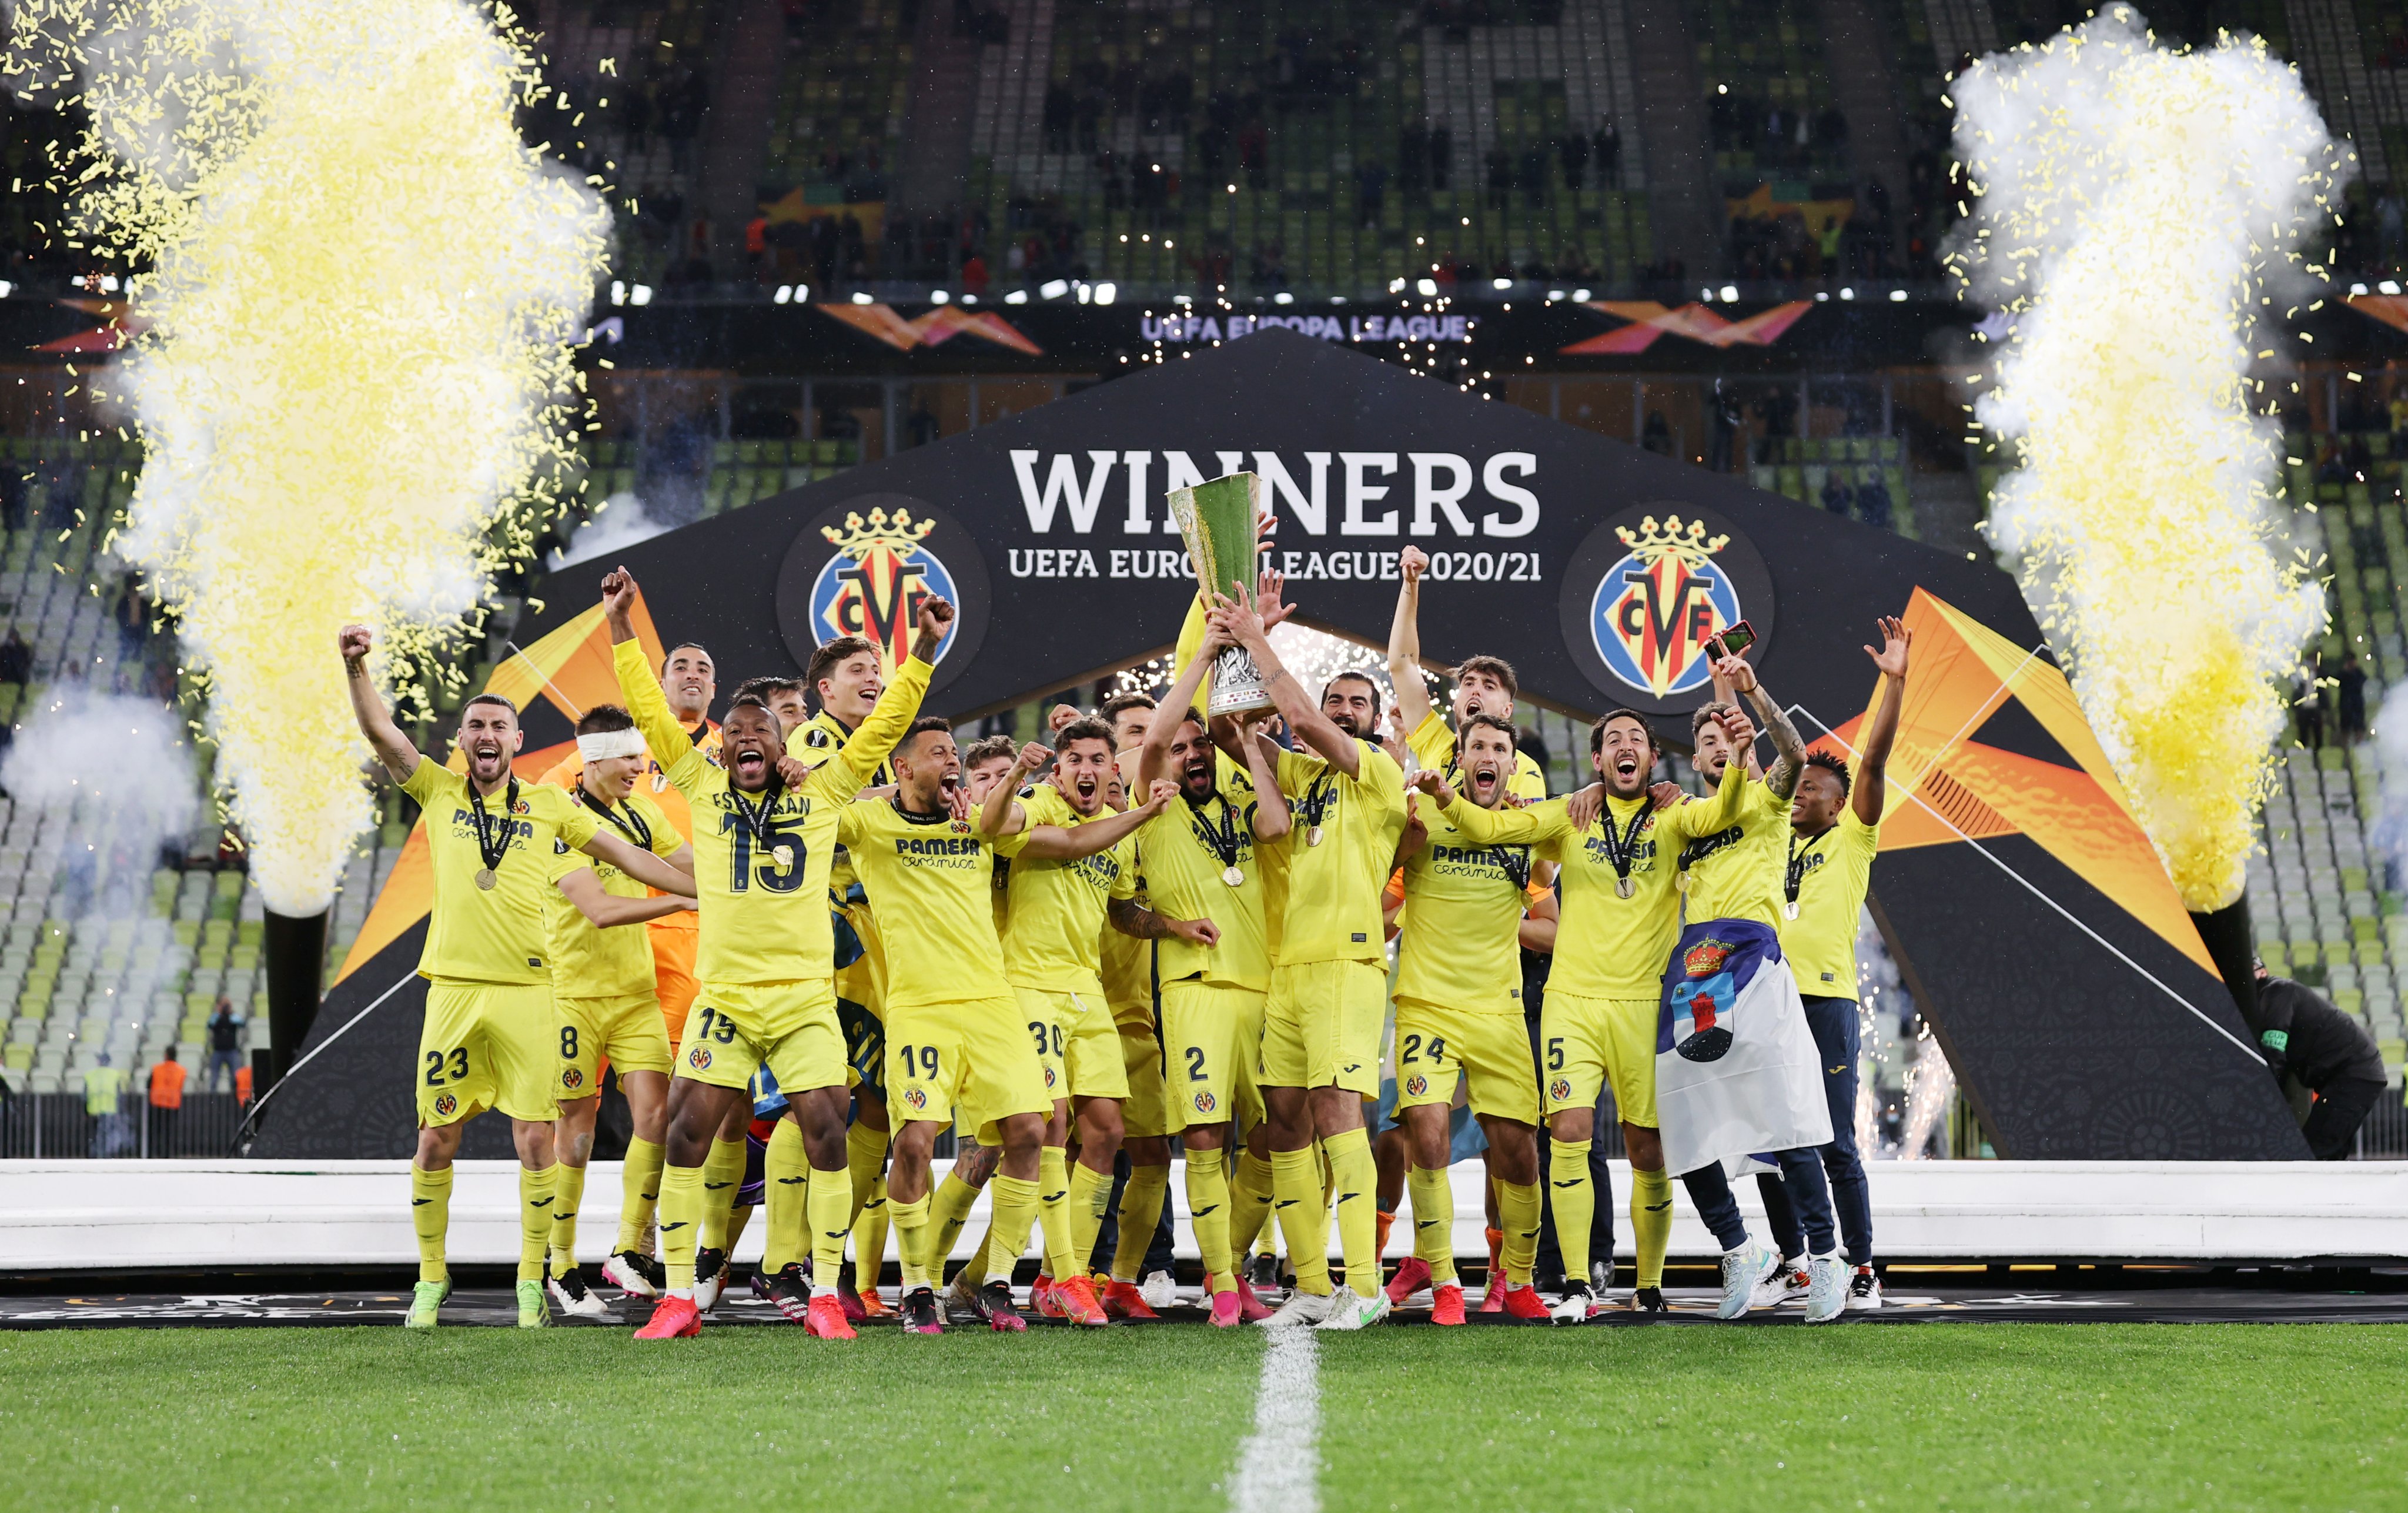 Maaf Man United, Villarreal Juara Liga Europa 2020/2021